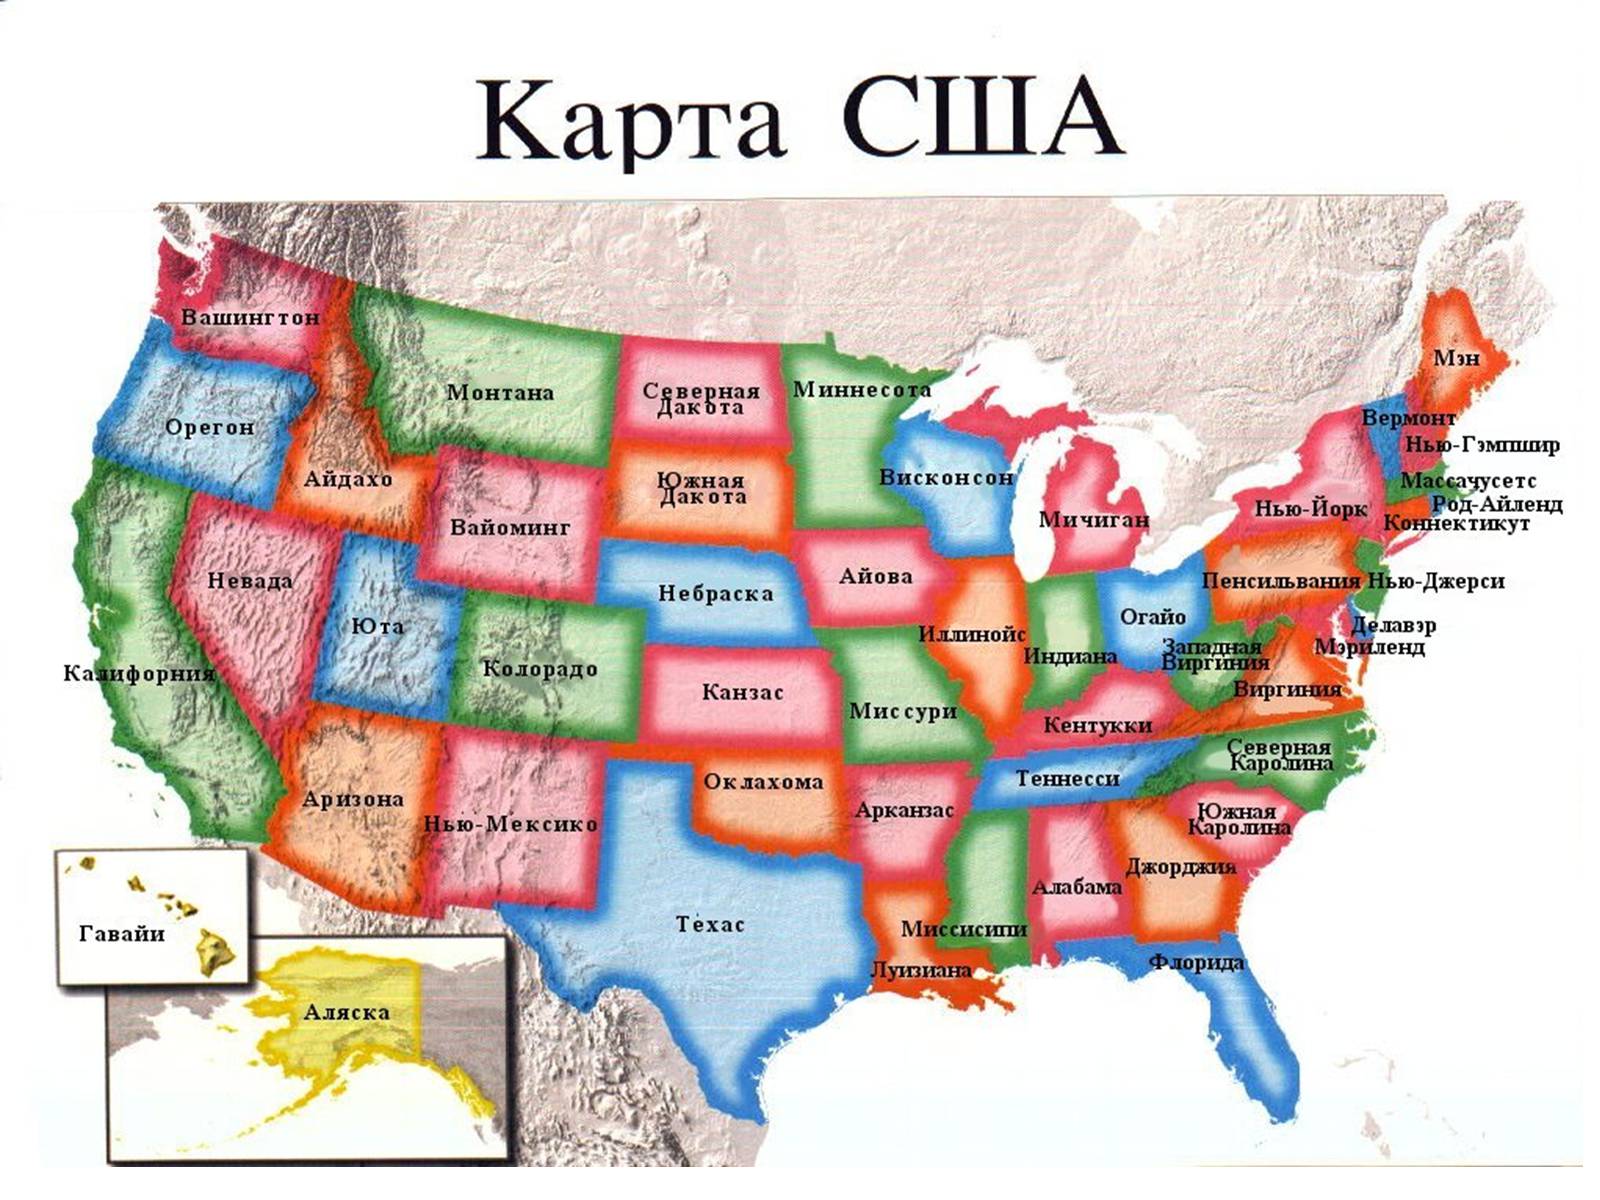 Пример сша. Америка карта Штатов на русском языке. Штат Айова на карте. Карта США со Штатами. Соединенные штаты Америки карта Штатов.